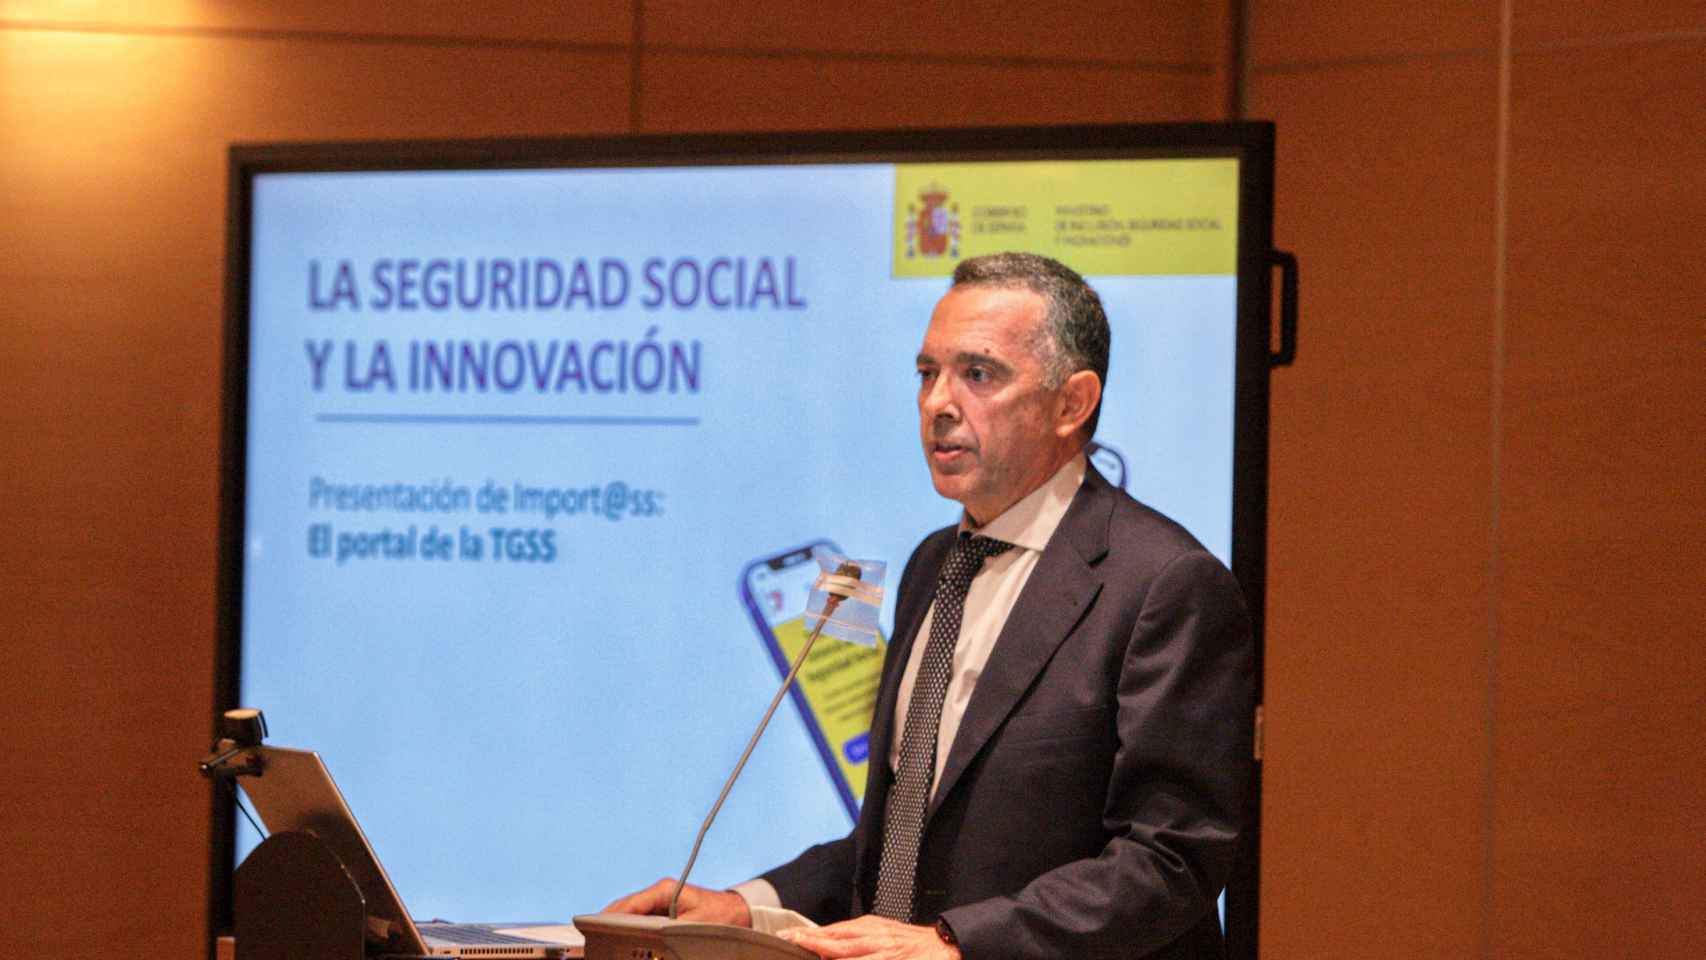 Andrés Harto, director general de la Tesorería General de la Seguridad Social